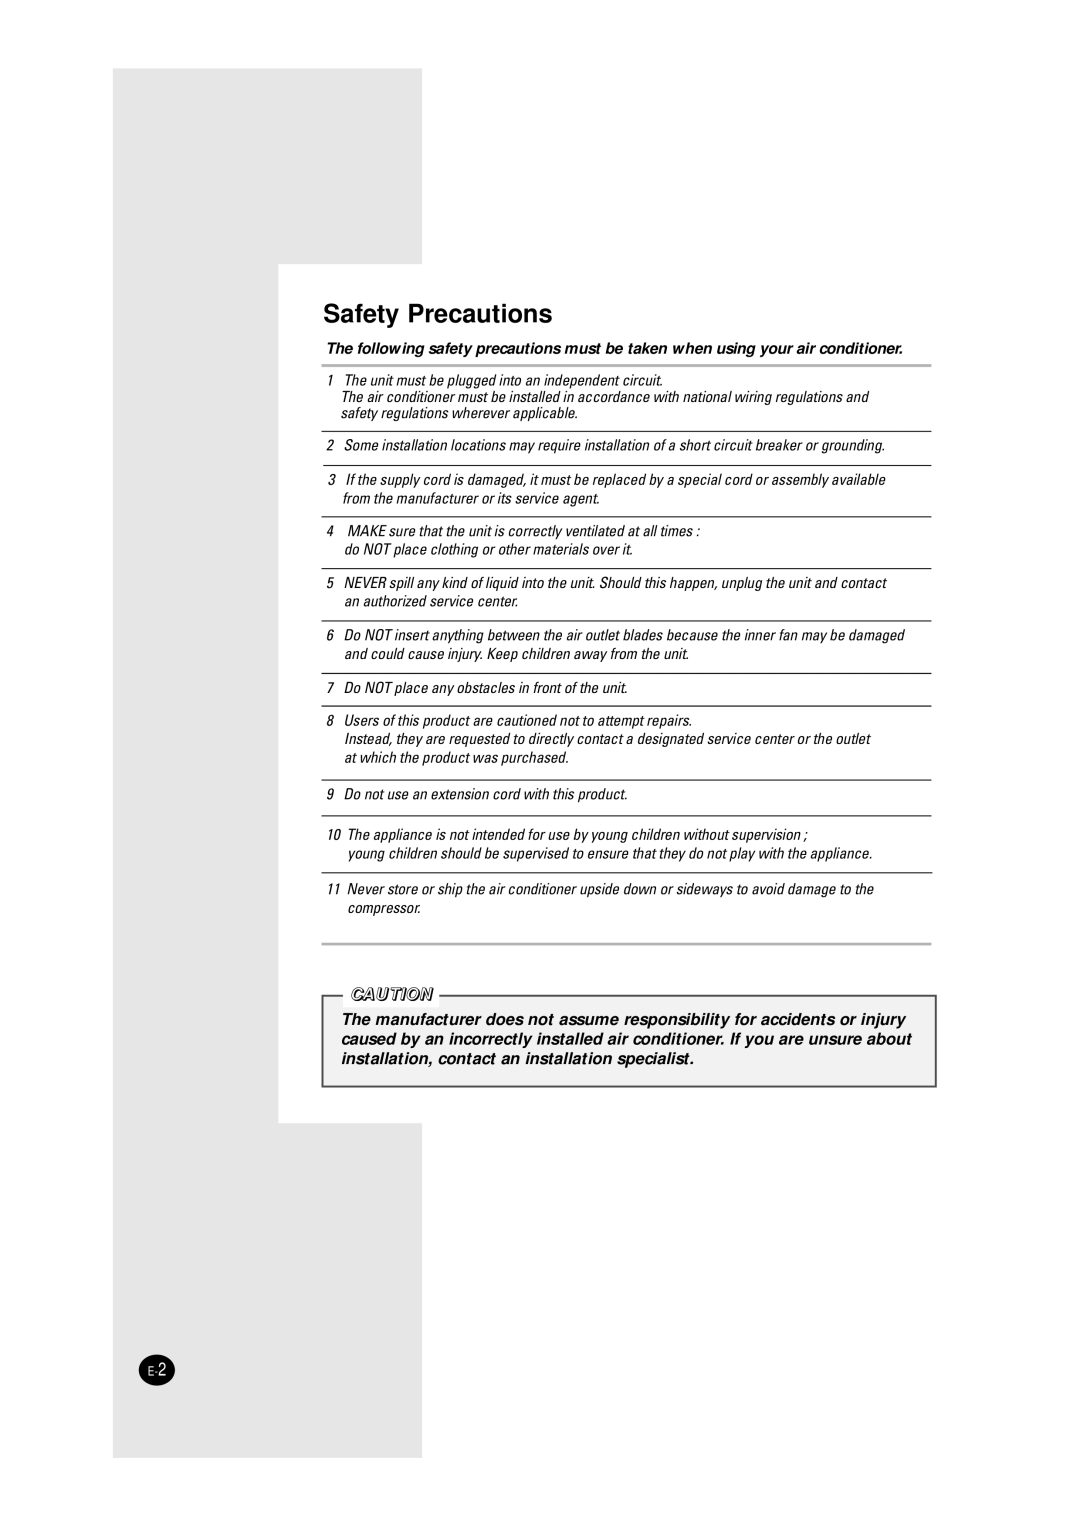 Samsung AW1010/AW1210, AW0750/AW0810, AW1800/AW1810 manual Safety Precautions 